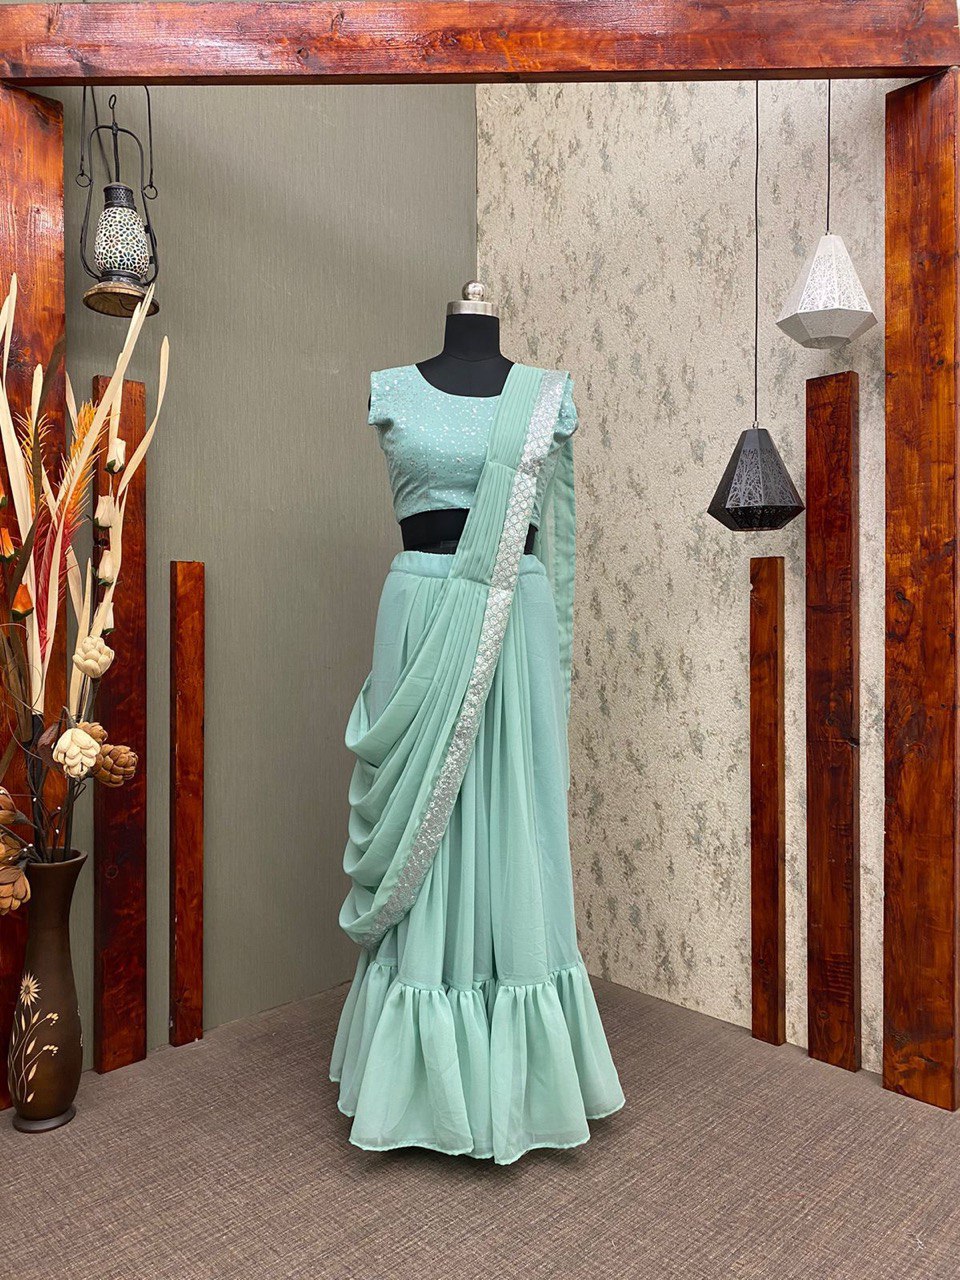 crop top lehenga | half saree lehanga | Half saree lehenga, Half saree  designs, Pink half sarees